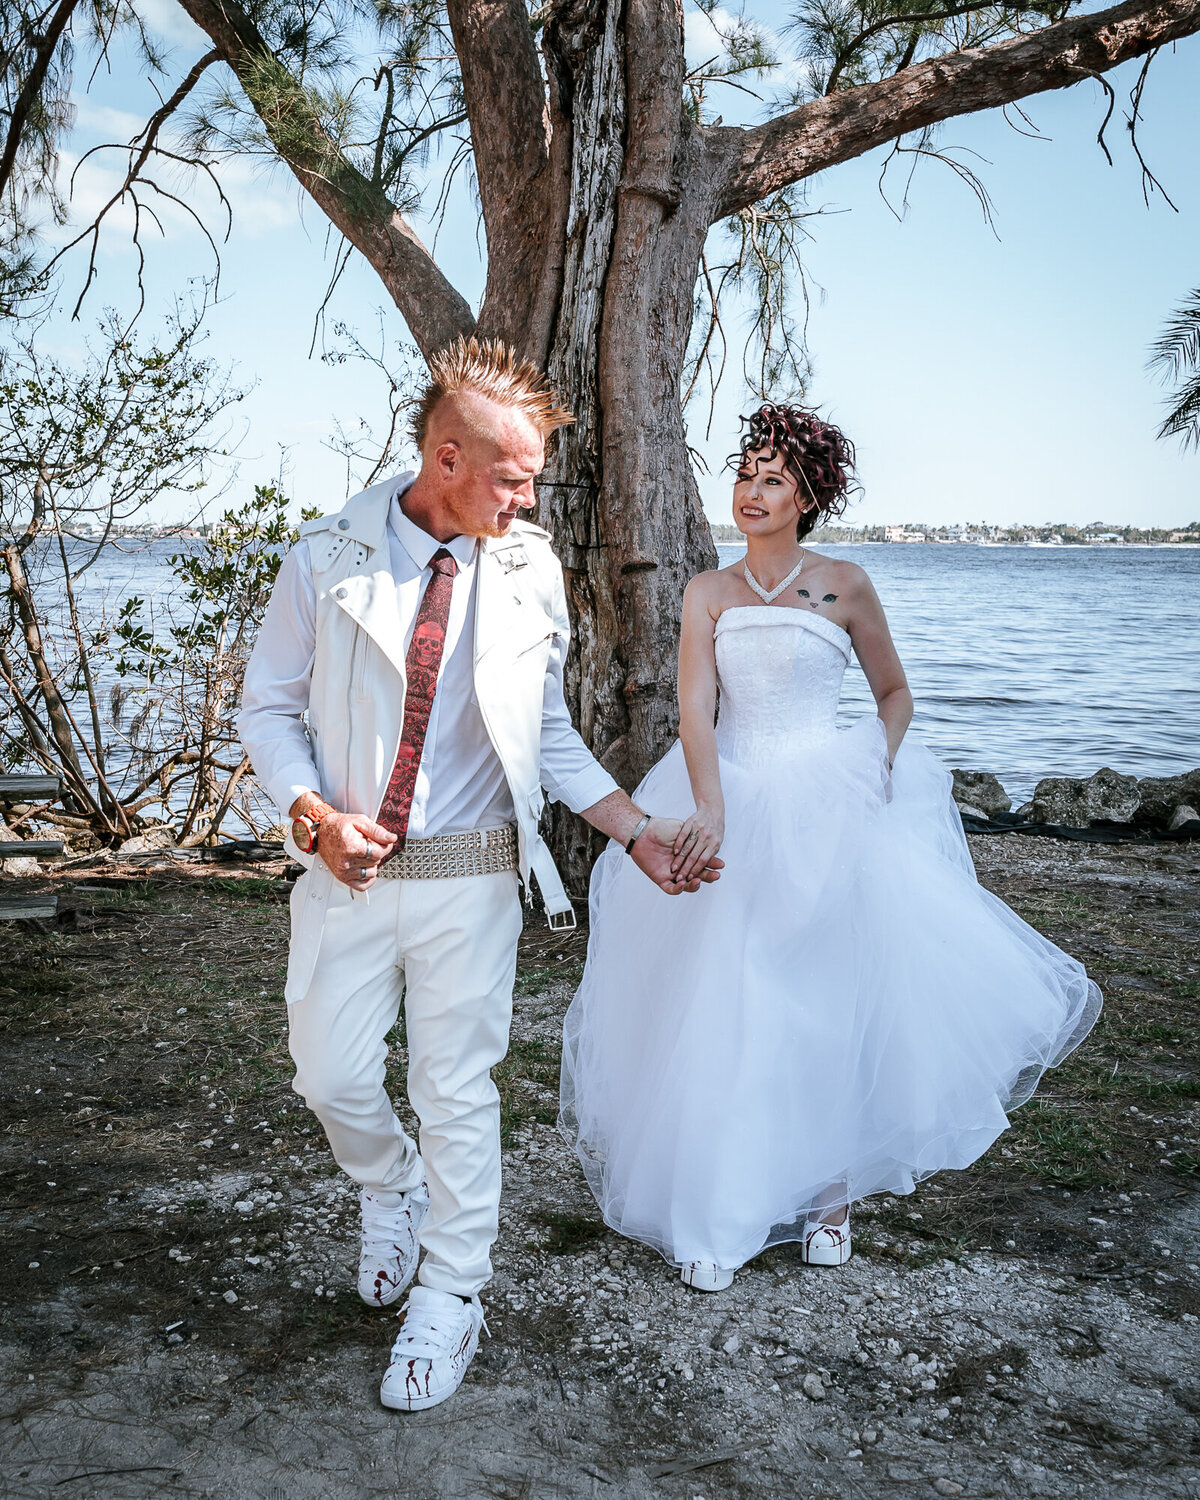 Southwest Florida wedding photographers - Fort Myers Wedding Photographer -19